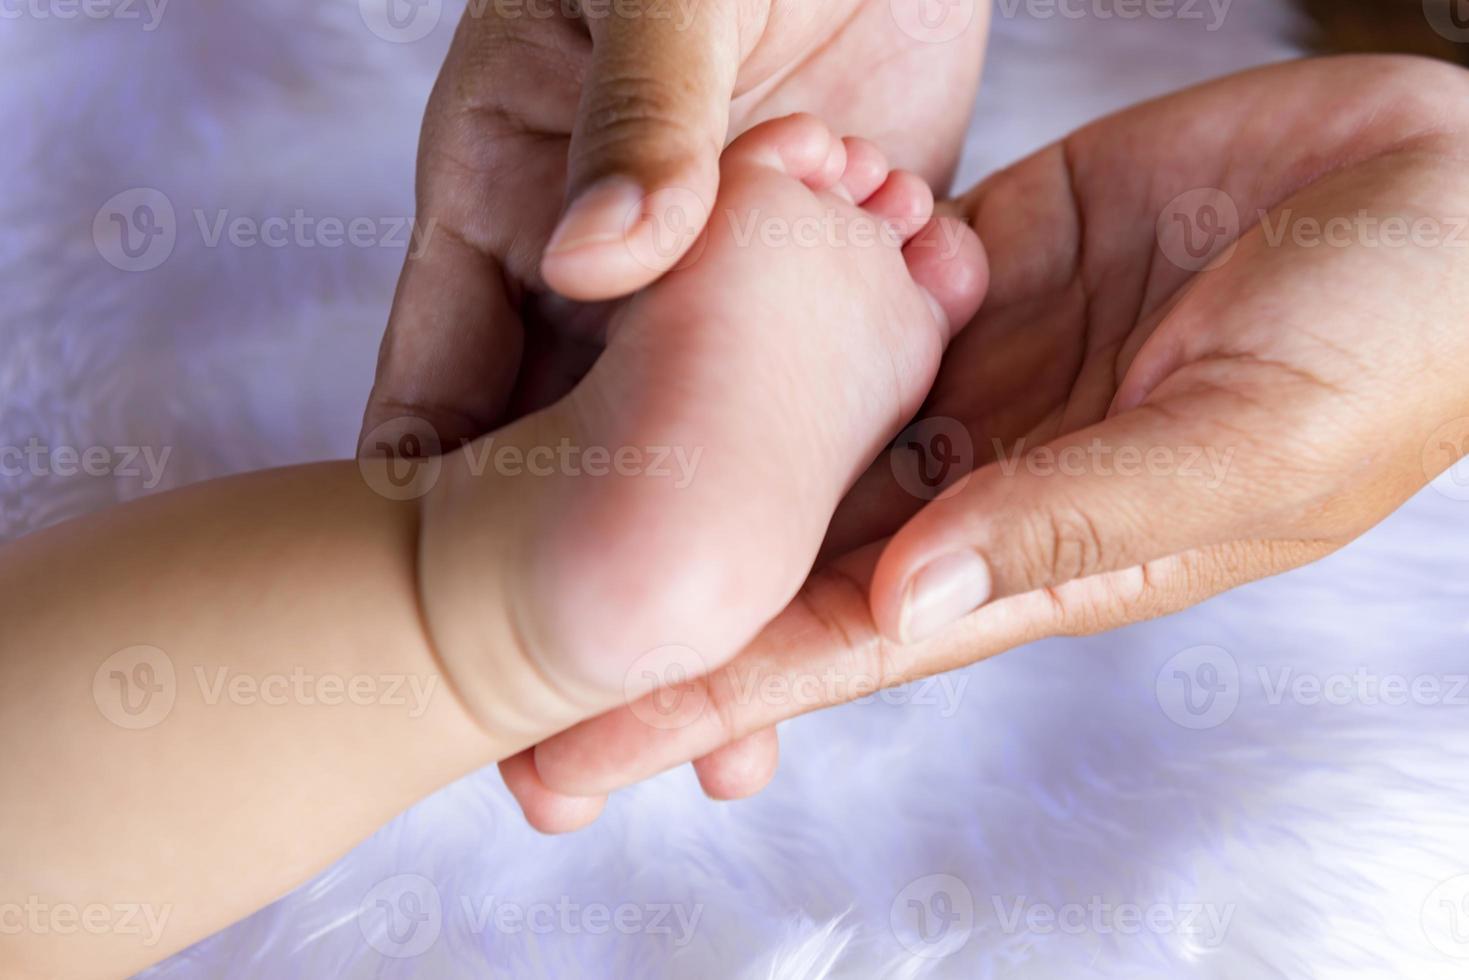 piedi del bambino nelle mani del padre. minuscole gambe di un neonato su mani maschili, primo piano. il concetto di una famiglia felice. la festa del papà foto